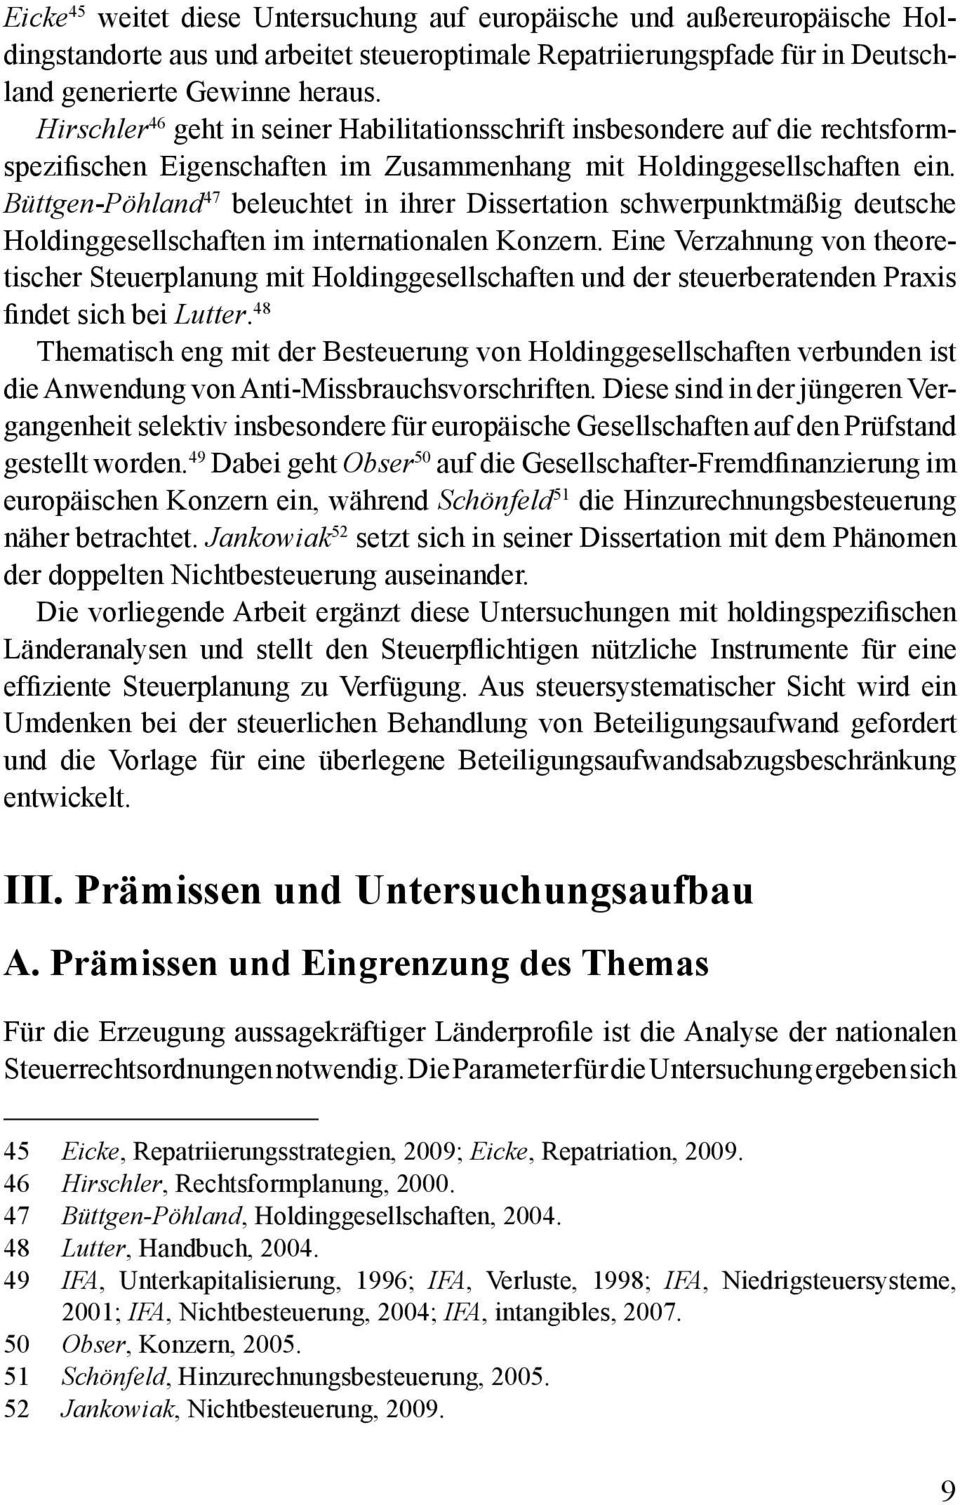 Büttgen-Pöhland 47 beleuchtet in ihrer Dissertation schwerpunktmäßig deutsche Holdinggesellschaften im internationalen Konzern.